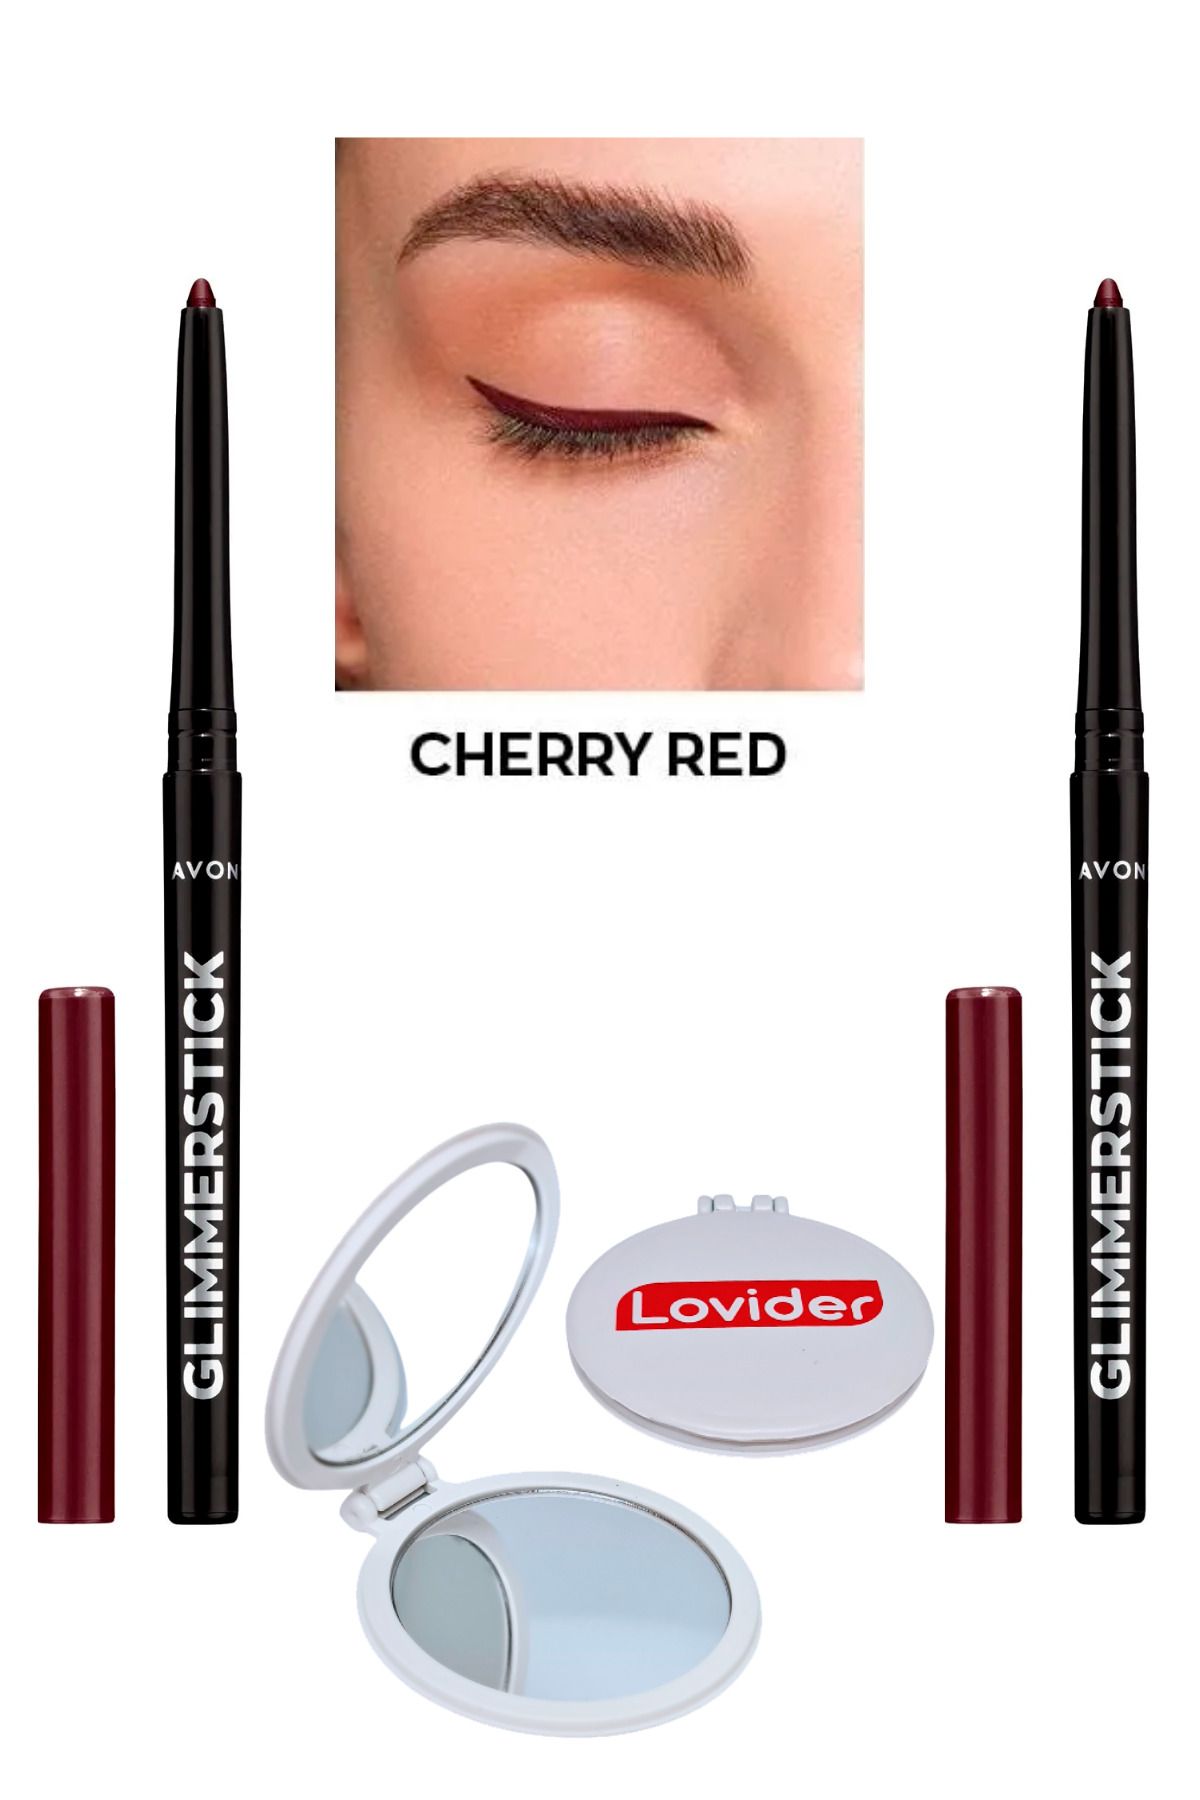 Avon Glimmersticks Asansörlü Göz Kalemi Cherry Red 2'li + Lovider Cep Aynası Hediye